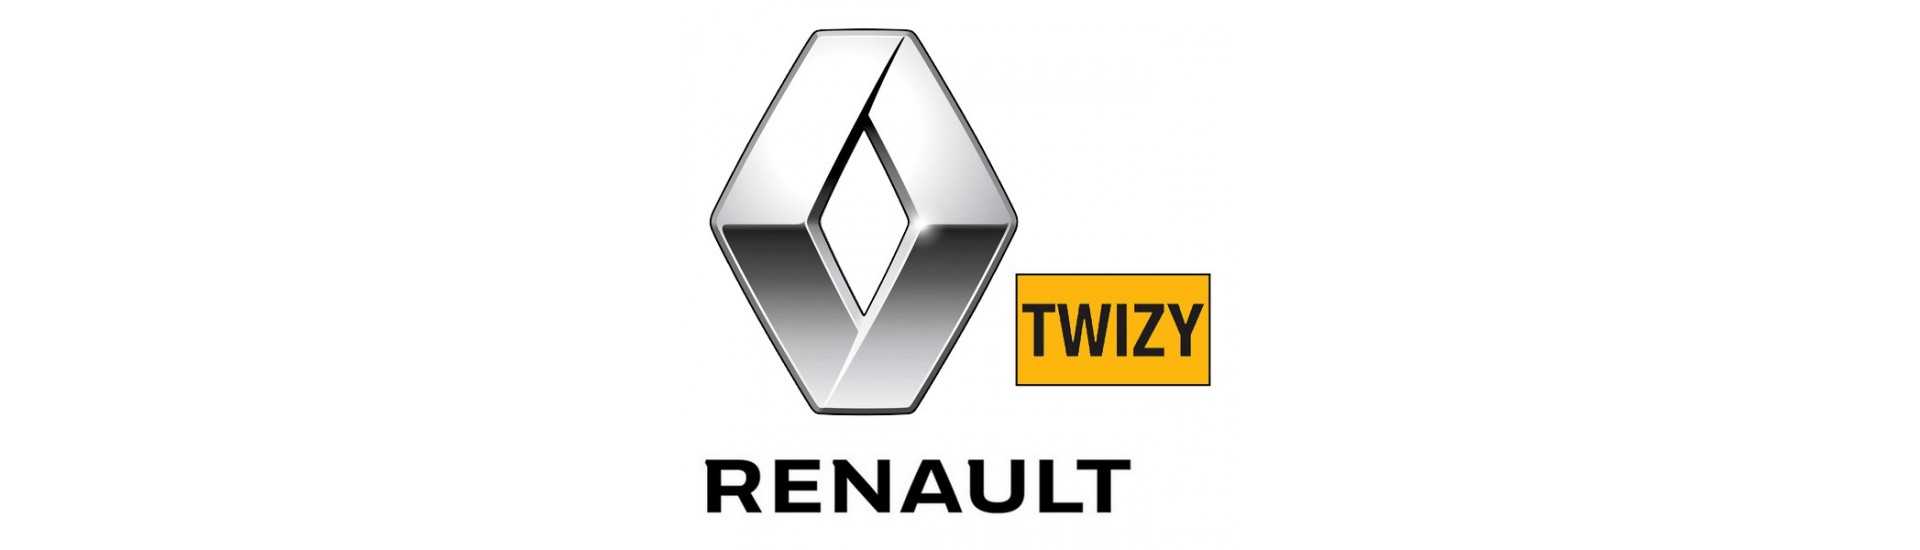 Ulkoinen ovi hoitaa parhaan auton hinnan ilman lisenssiä Renault